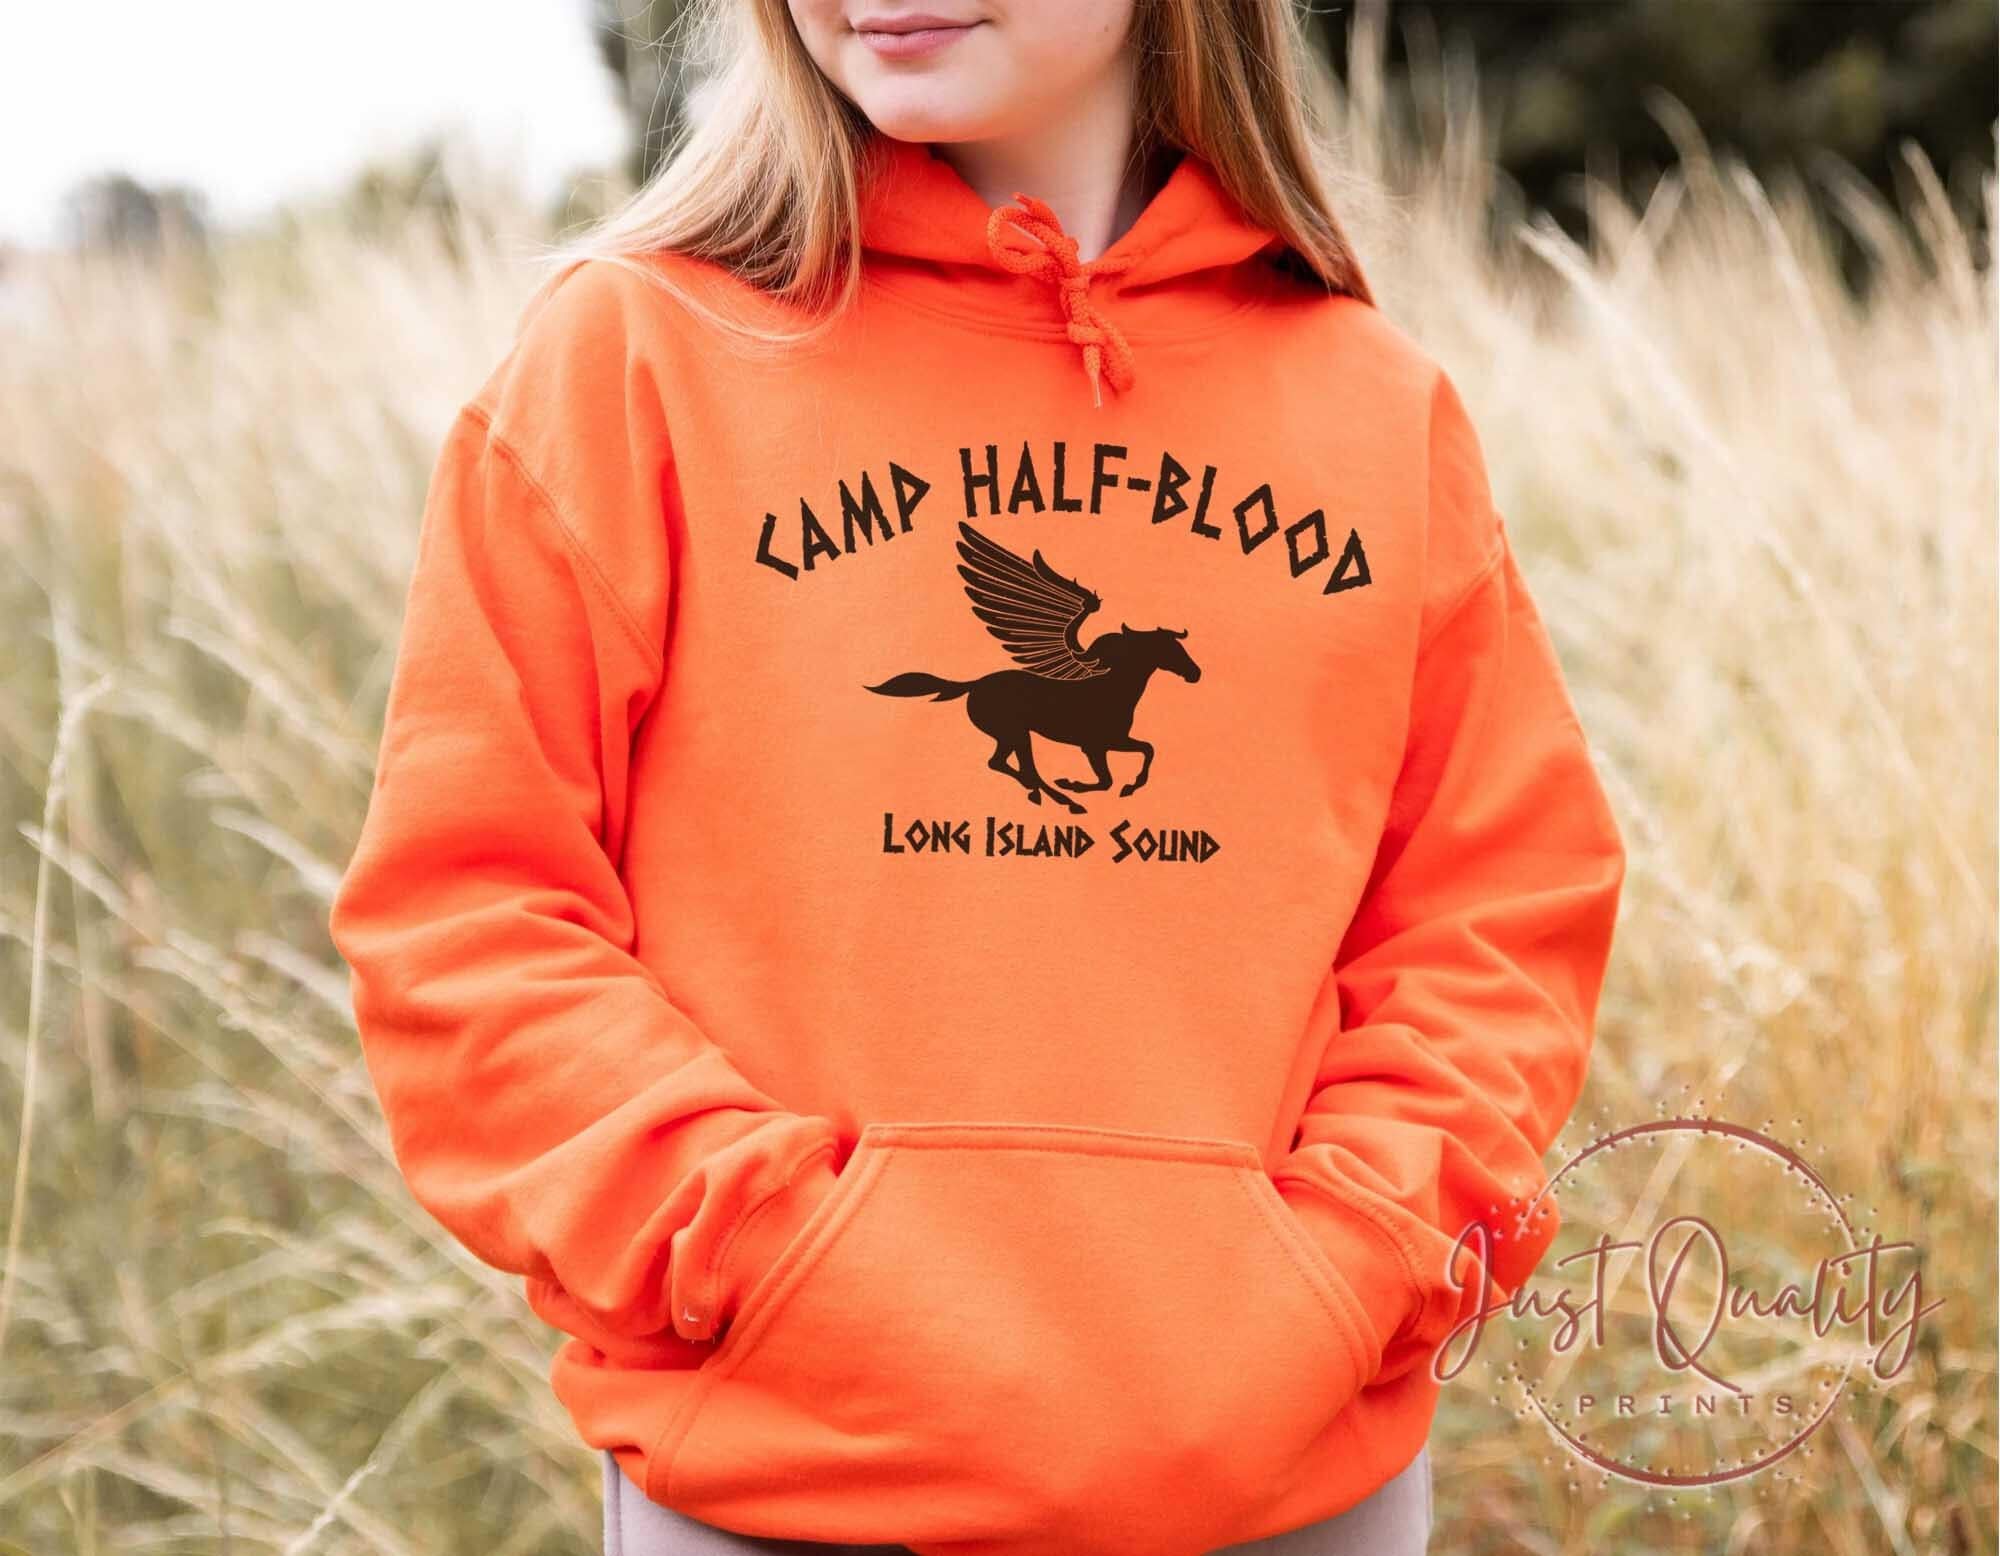 CAMP HALF BLOOD - Camp Half Blood T Shirt & Hoodie – 1920TEE